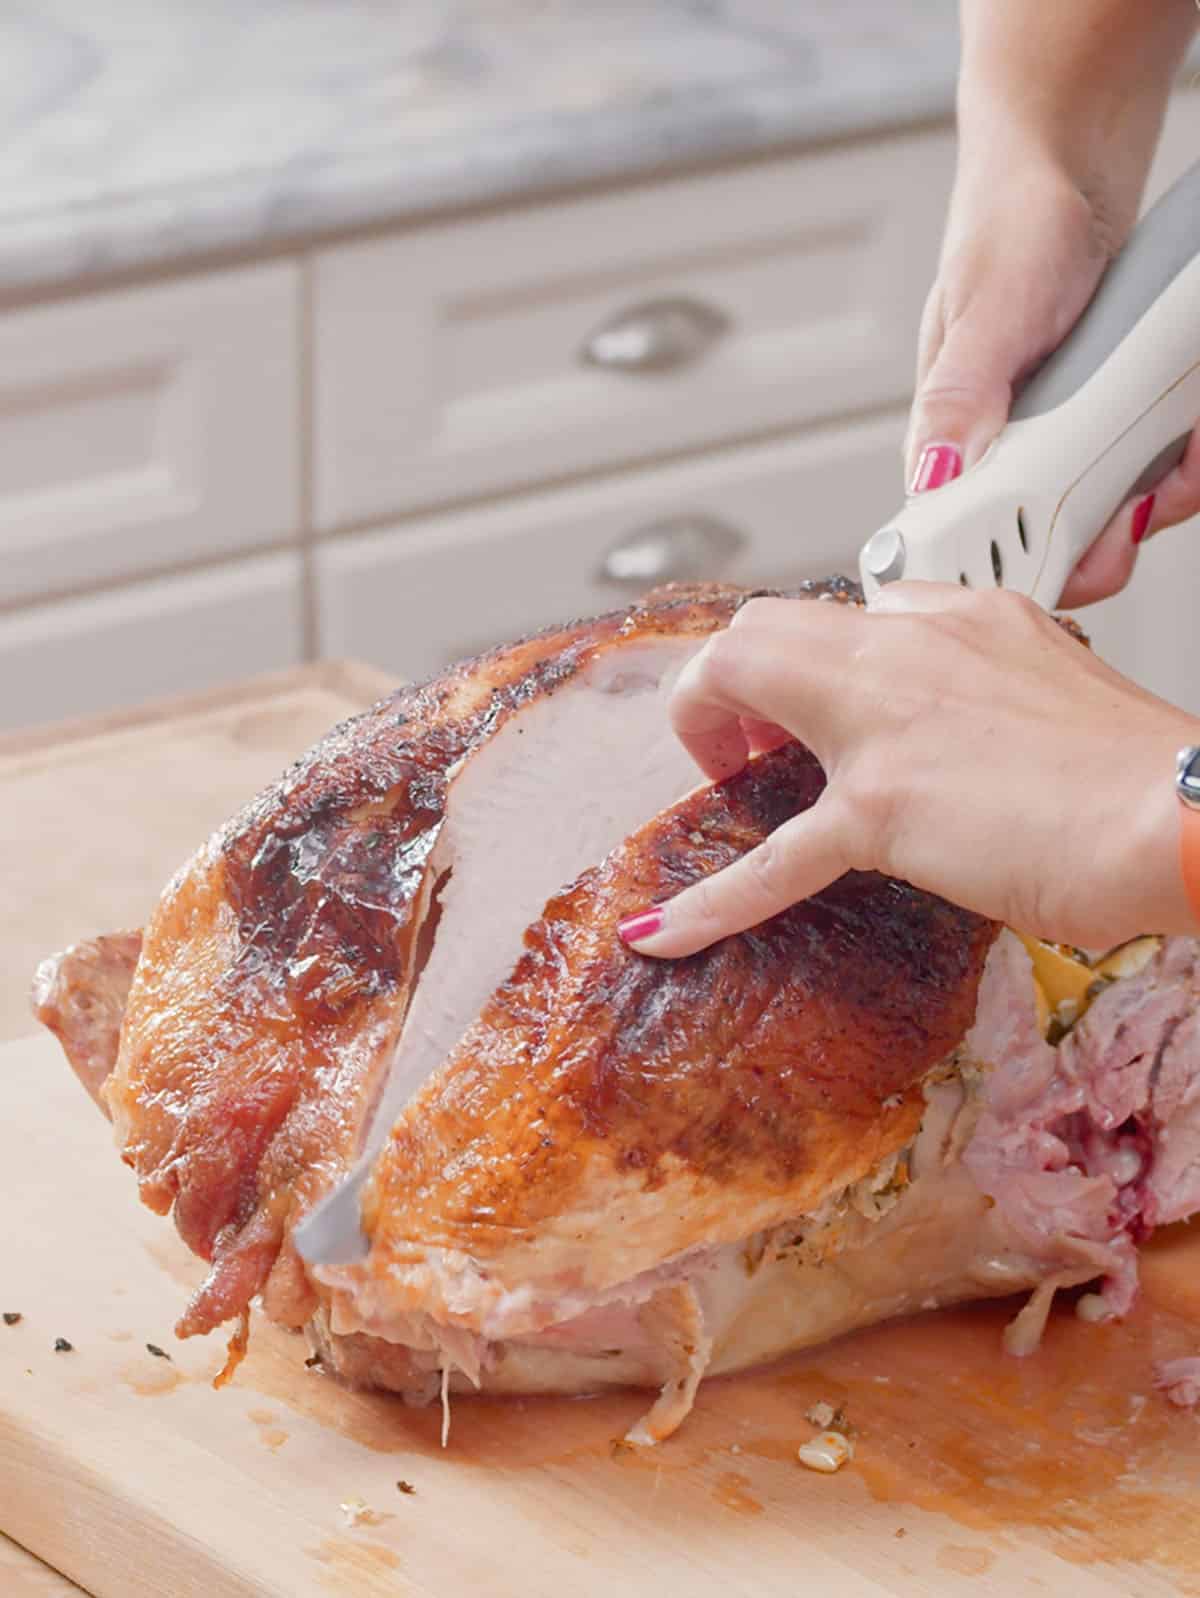 Breast being cut off a roast turkey on a cutting board.